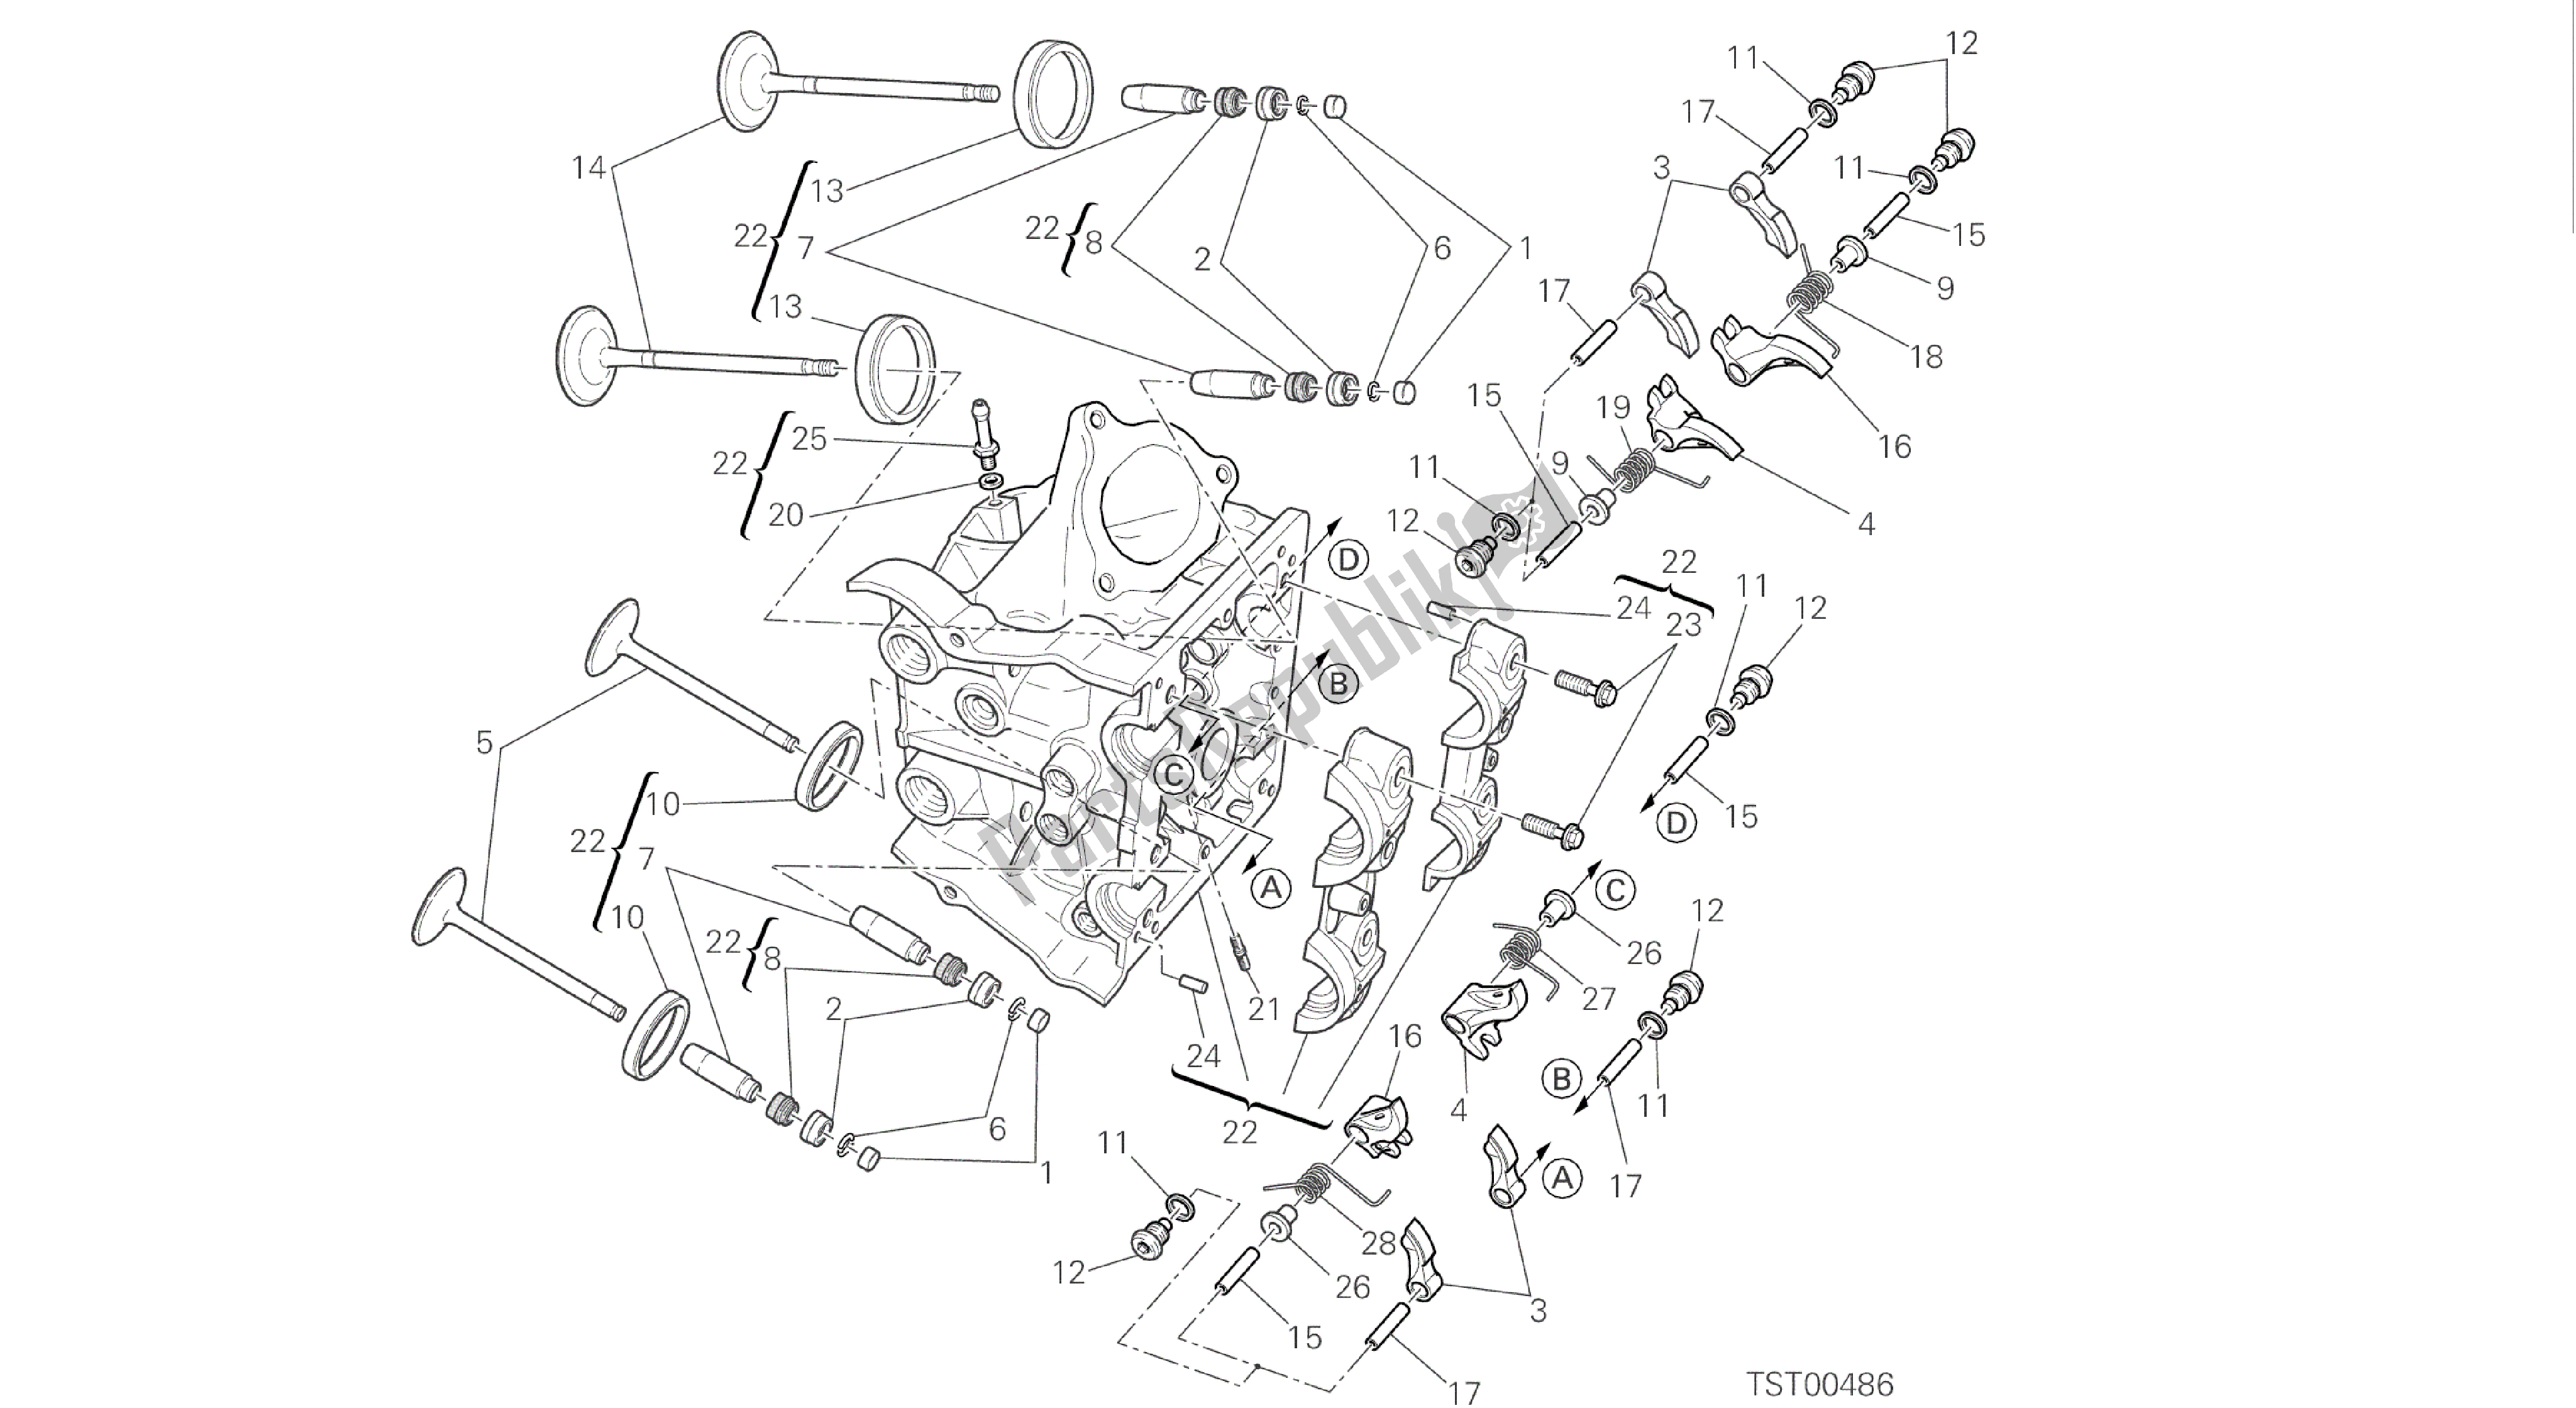 Alle onderdelen voor de Tekening 015 - Horizontale Kop [mod: Hym-sp; Xst: Aus, Eur, Fra, Jap, Twn] Groepsmotor van de Ducati Hypermotard SP 821 2014